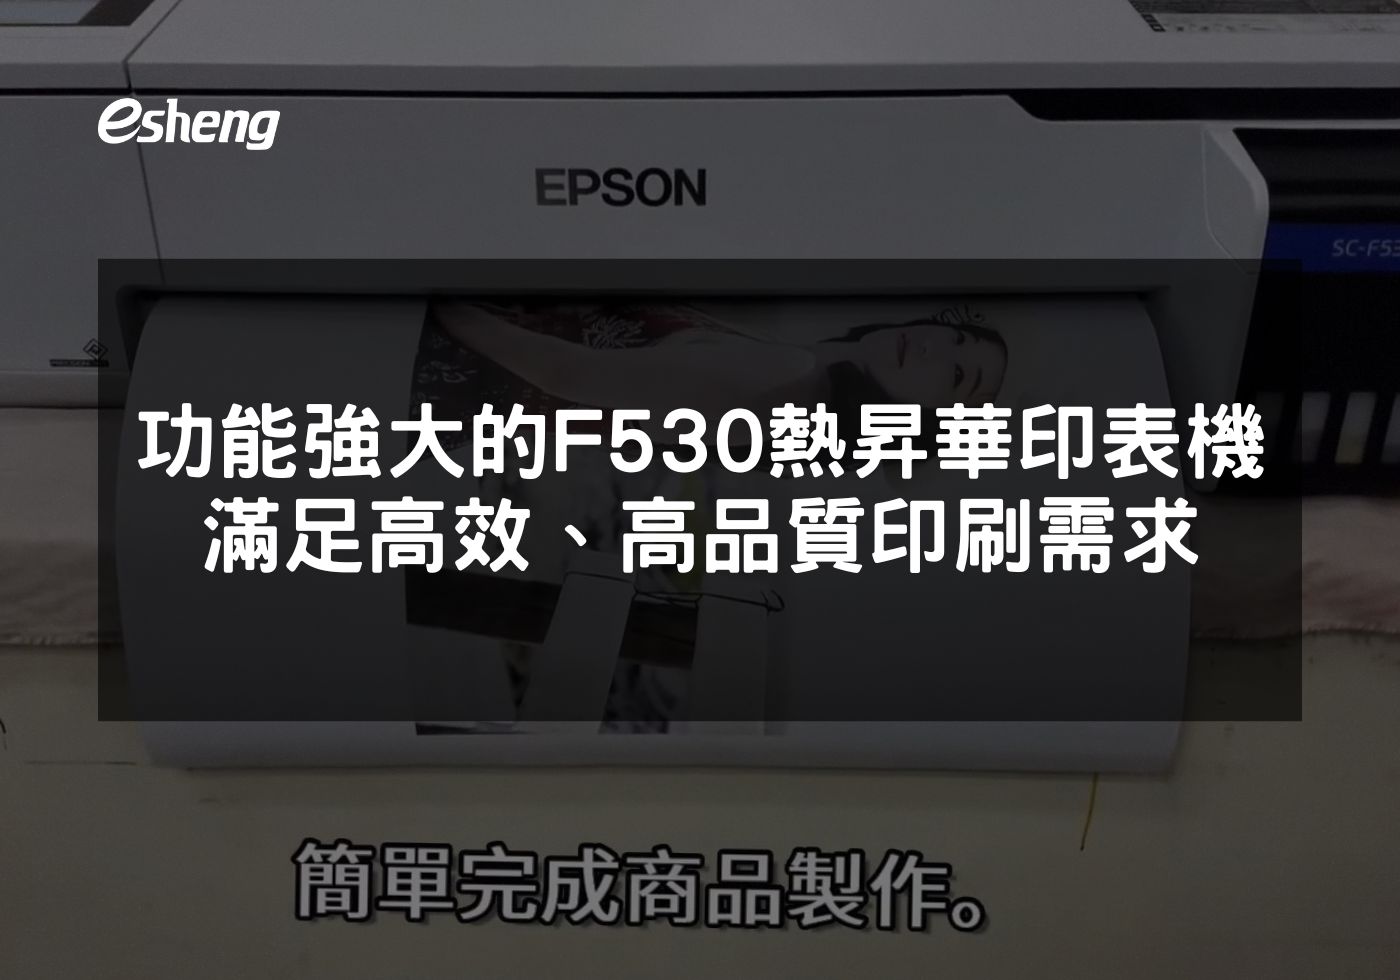 閱讀更多文章 功能強大的EPSON F530 熱昇華印表機，滿足高效、高品質印刷需求